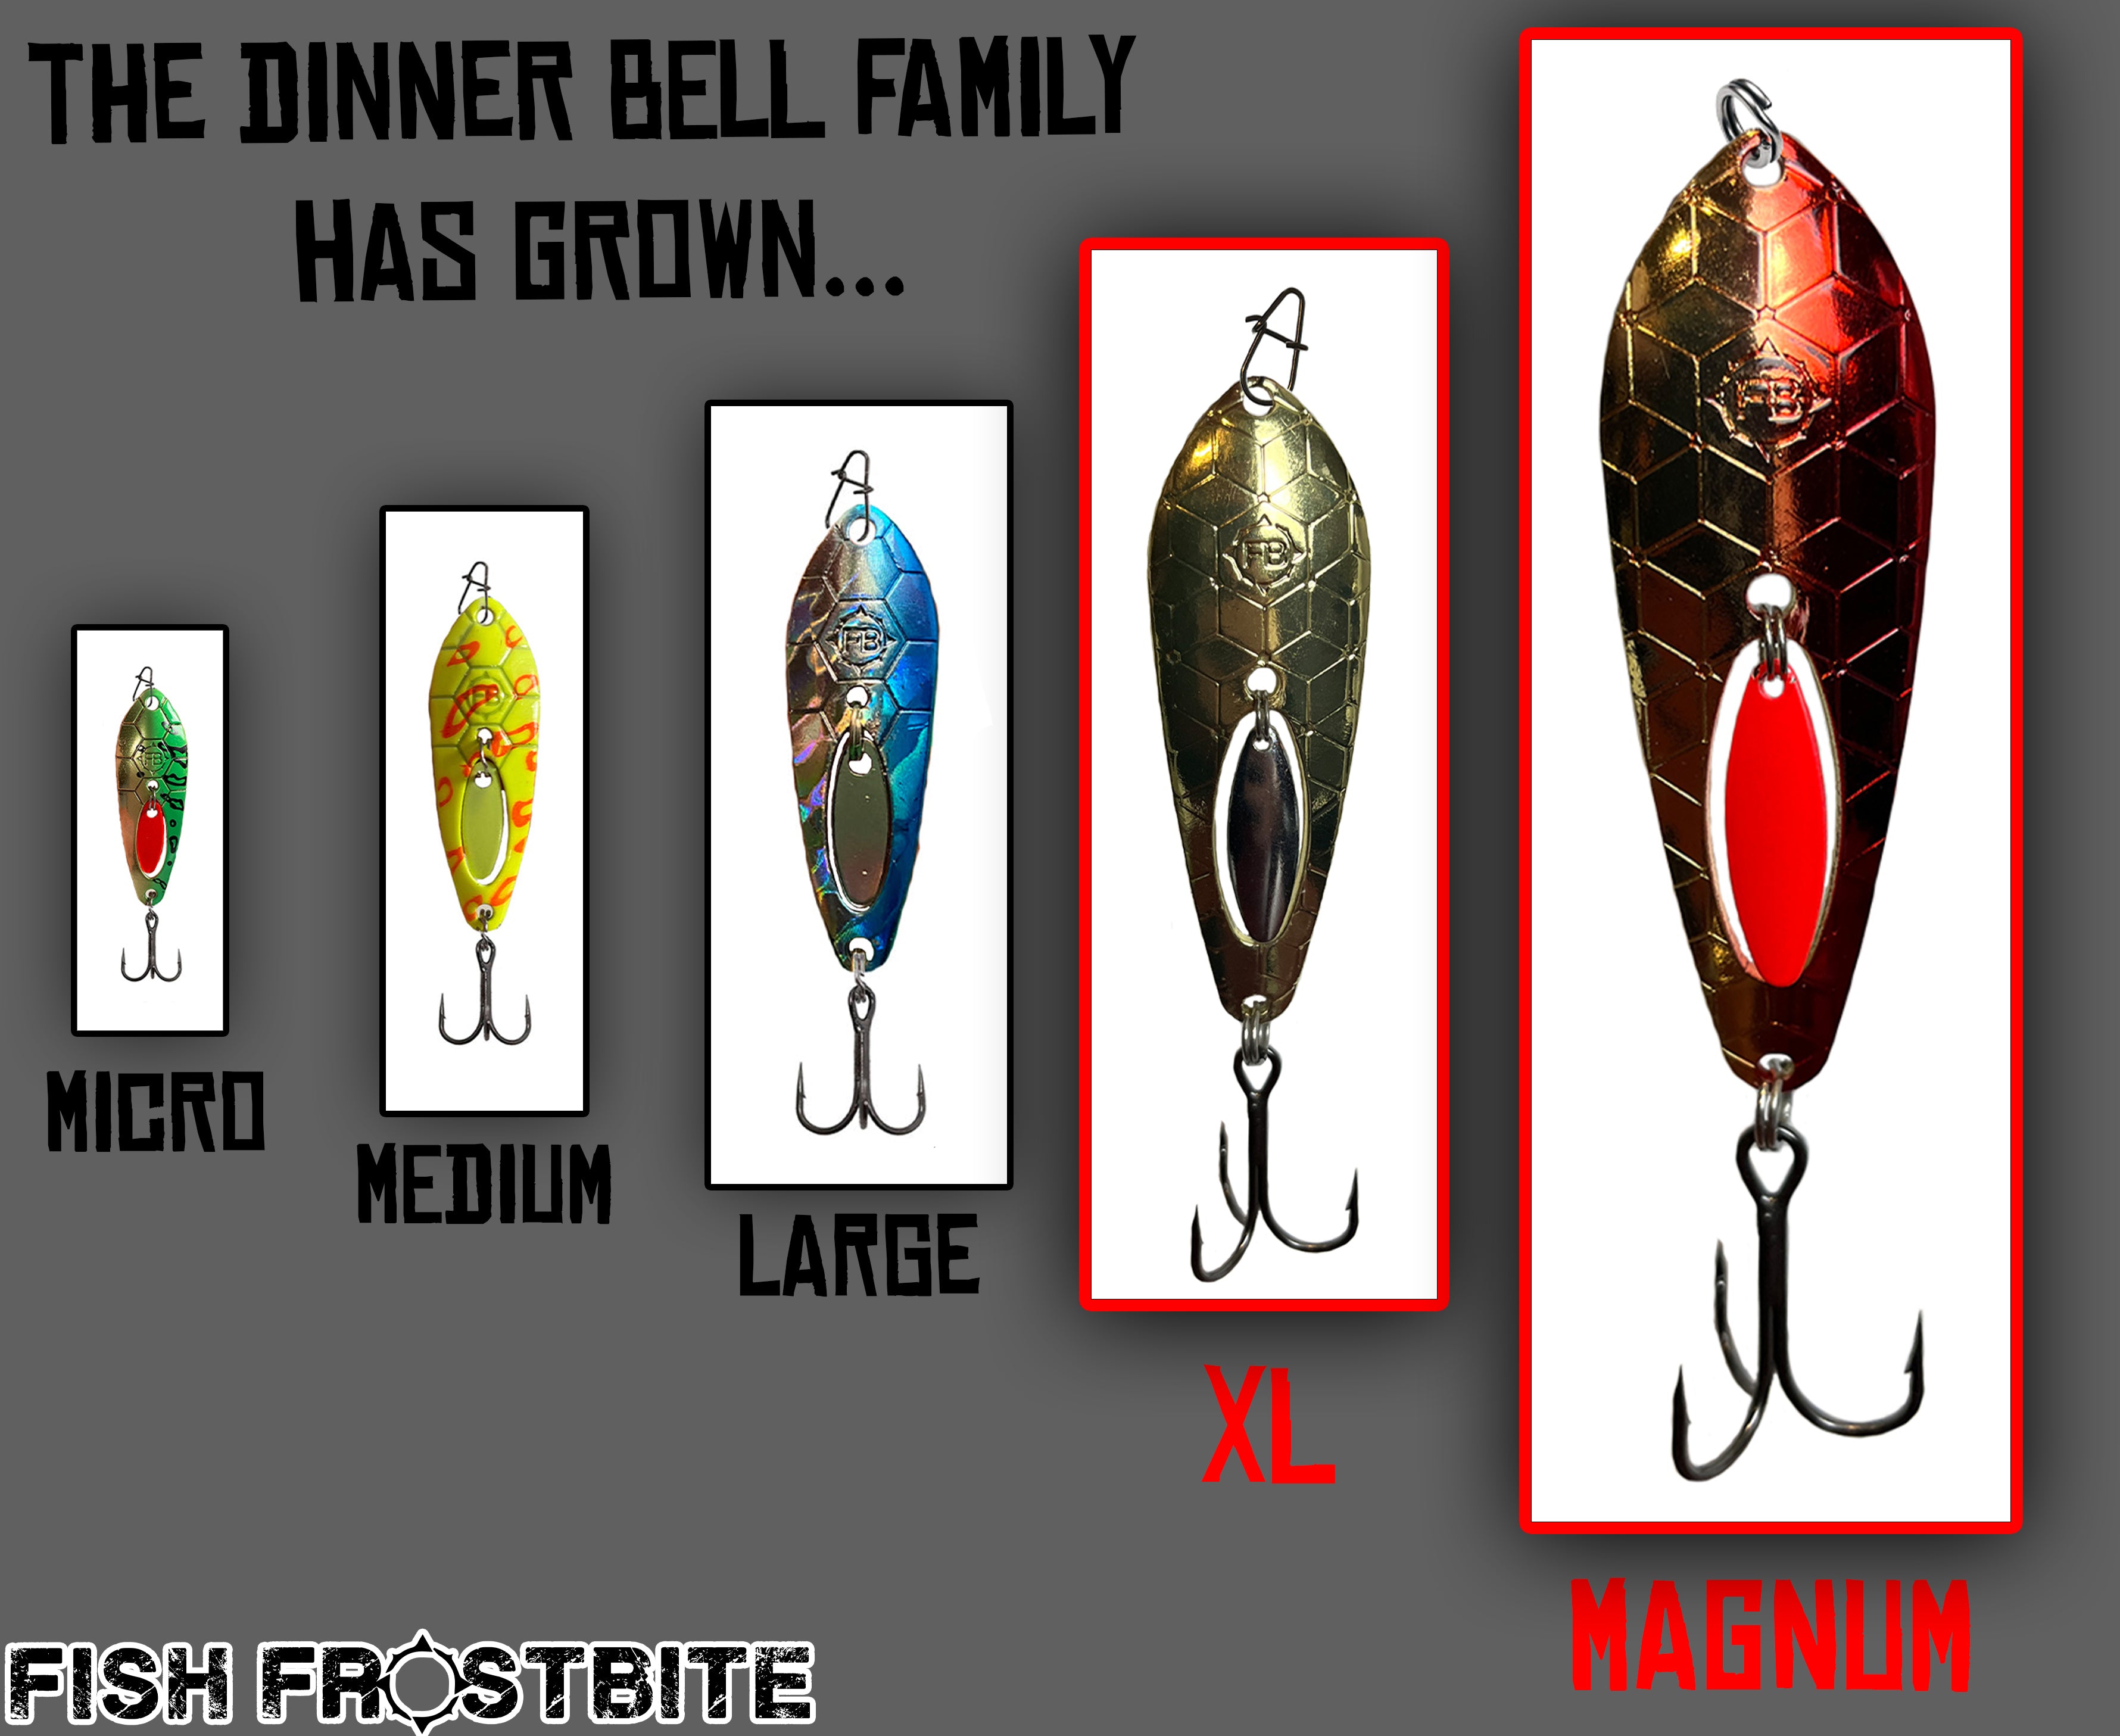 Medium Dinner Bell Spoon (3/16oz) Bullseye